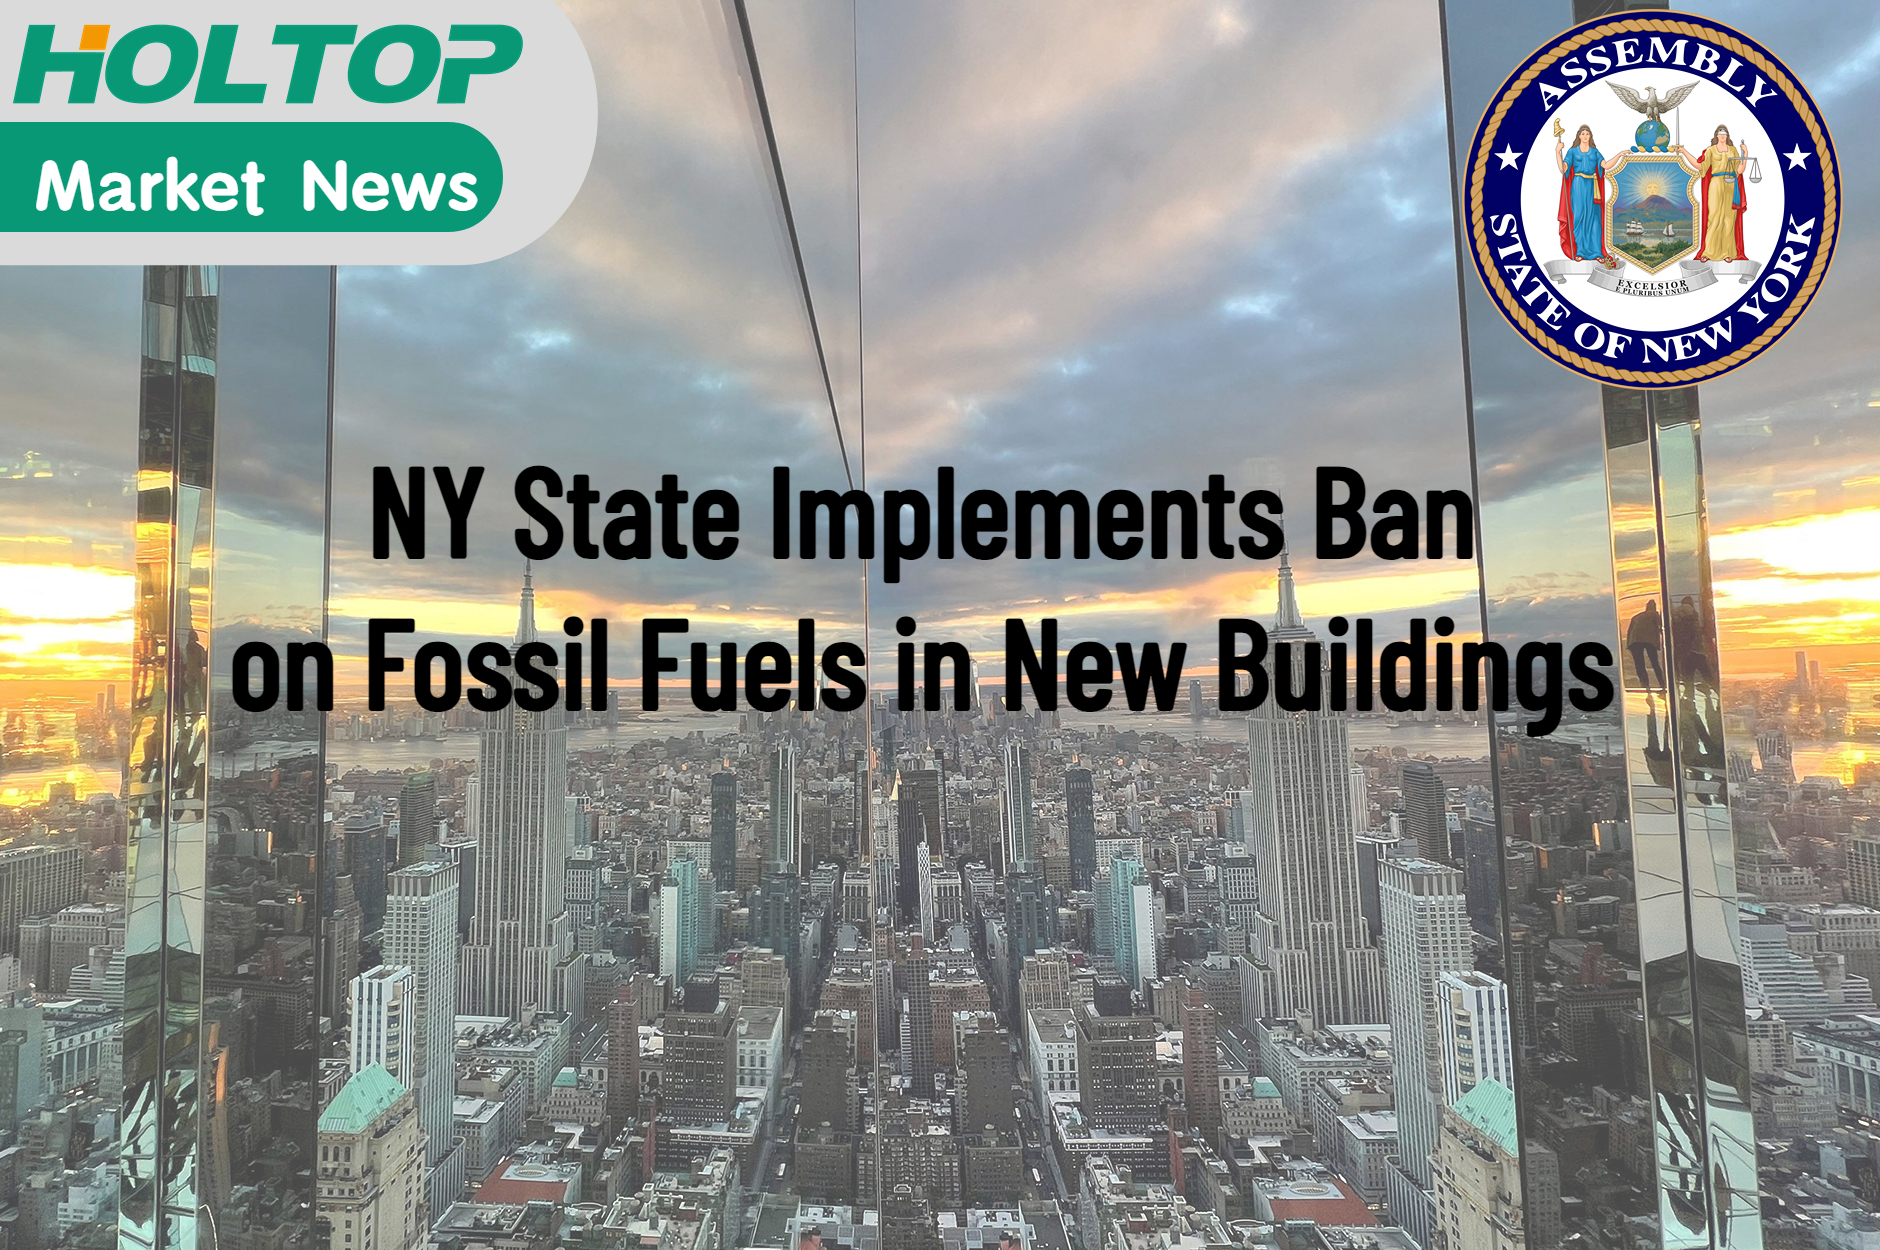 NY stát zavádí zákaz fosilních paliv v nových budovách